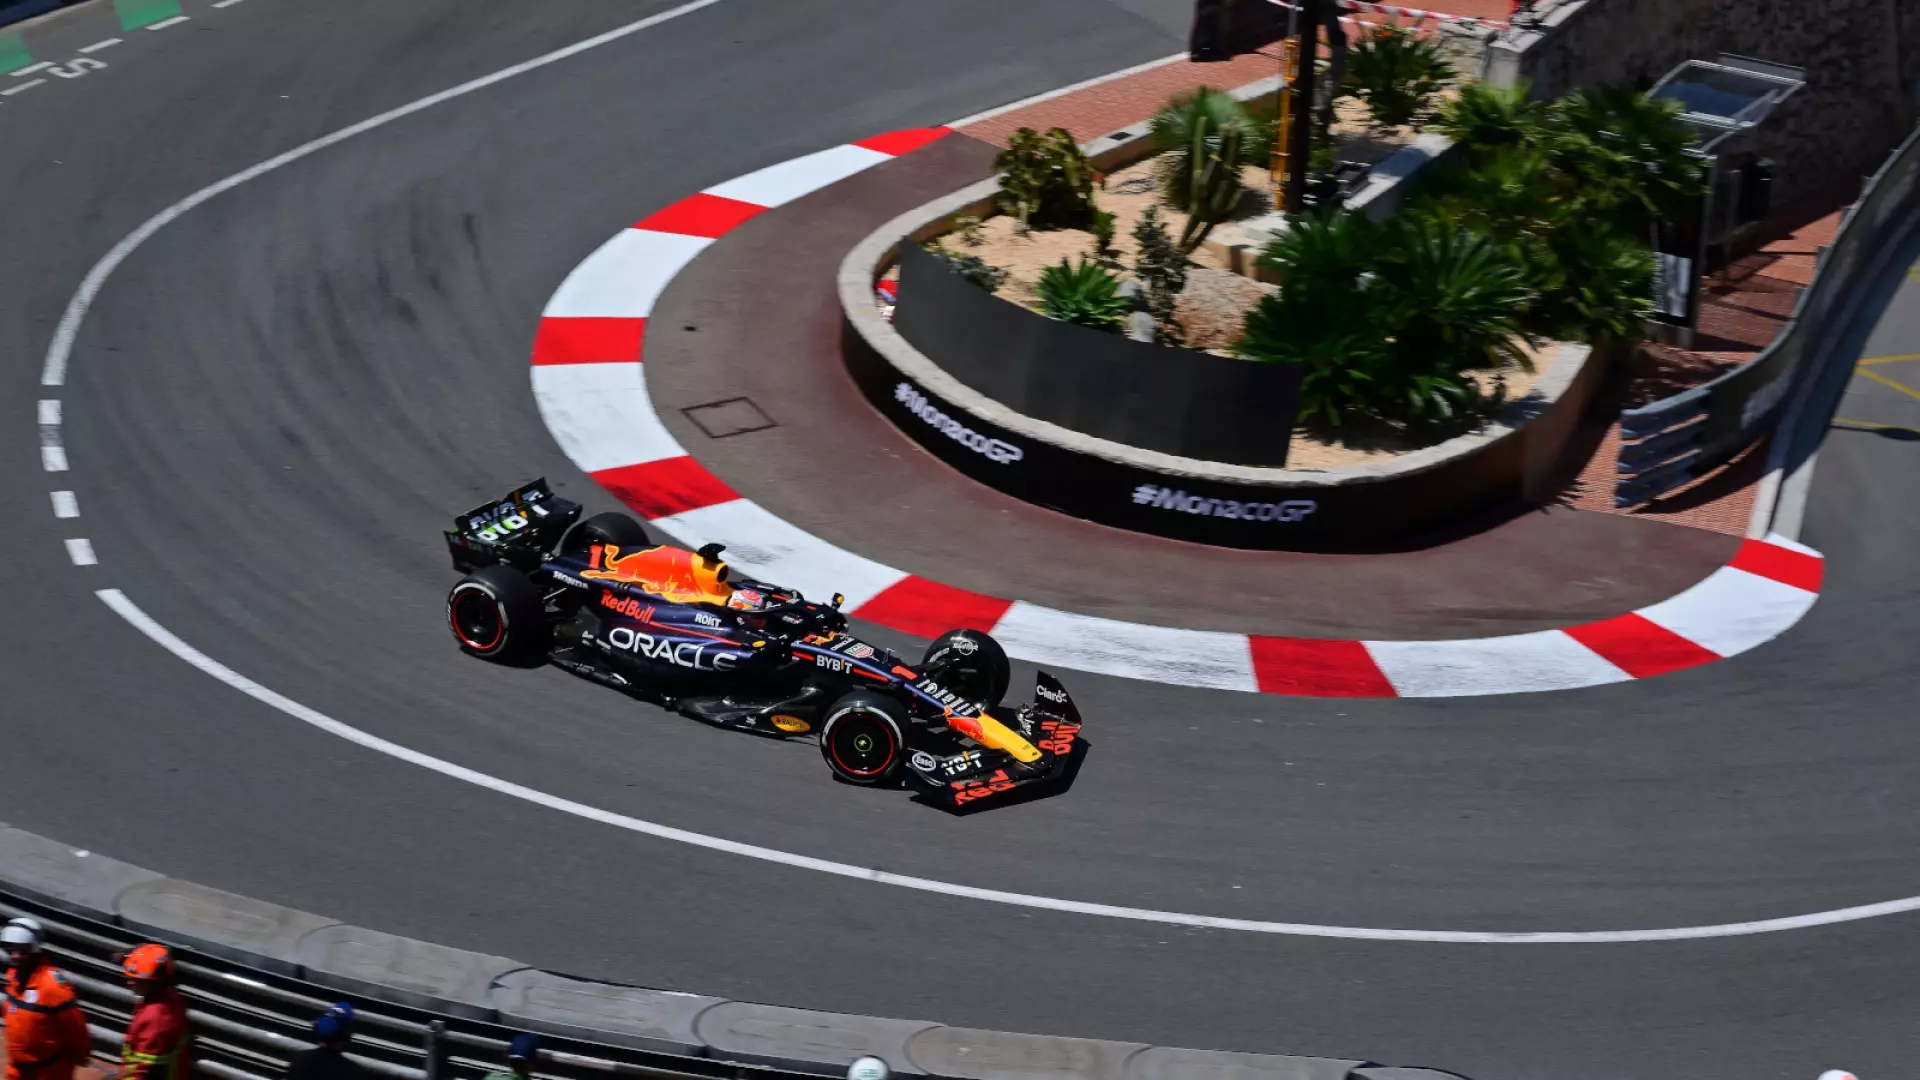 F1, Gp Monte Carlo: Max Verstappen davanti nelle seconde libere, Ferrari vicine